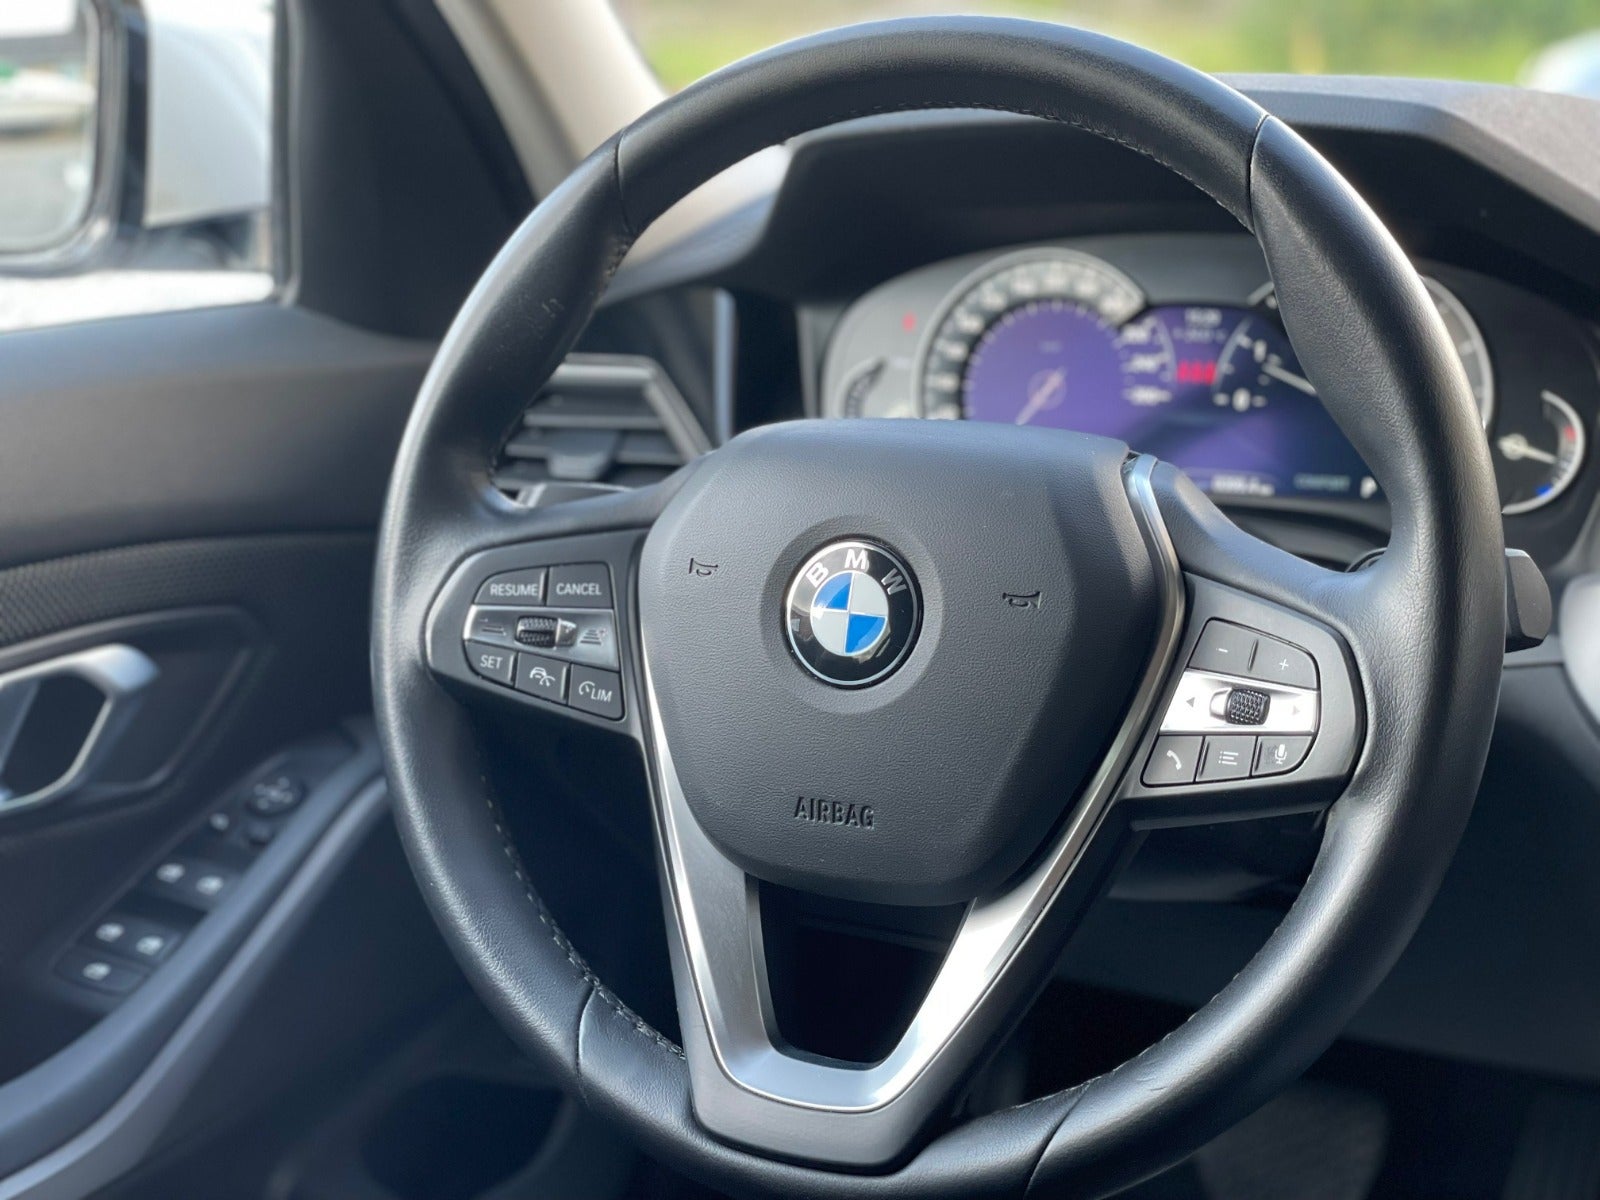 BMW 320d 2020